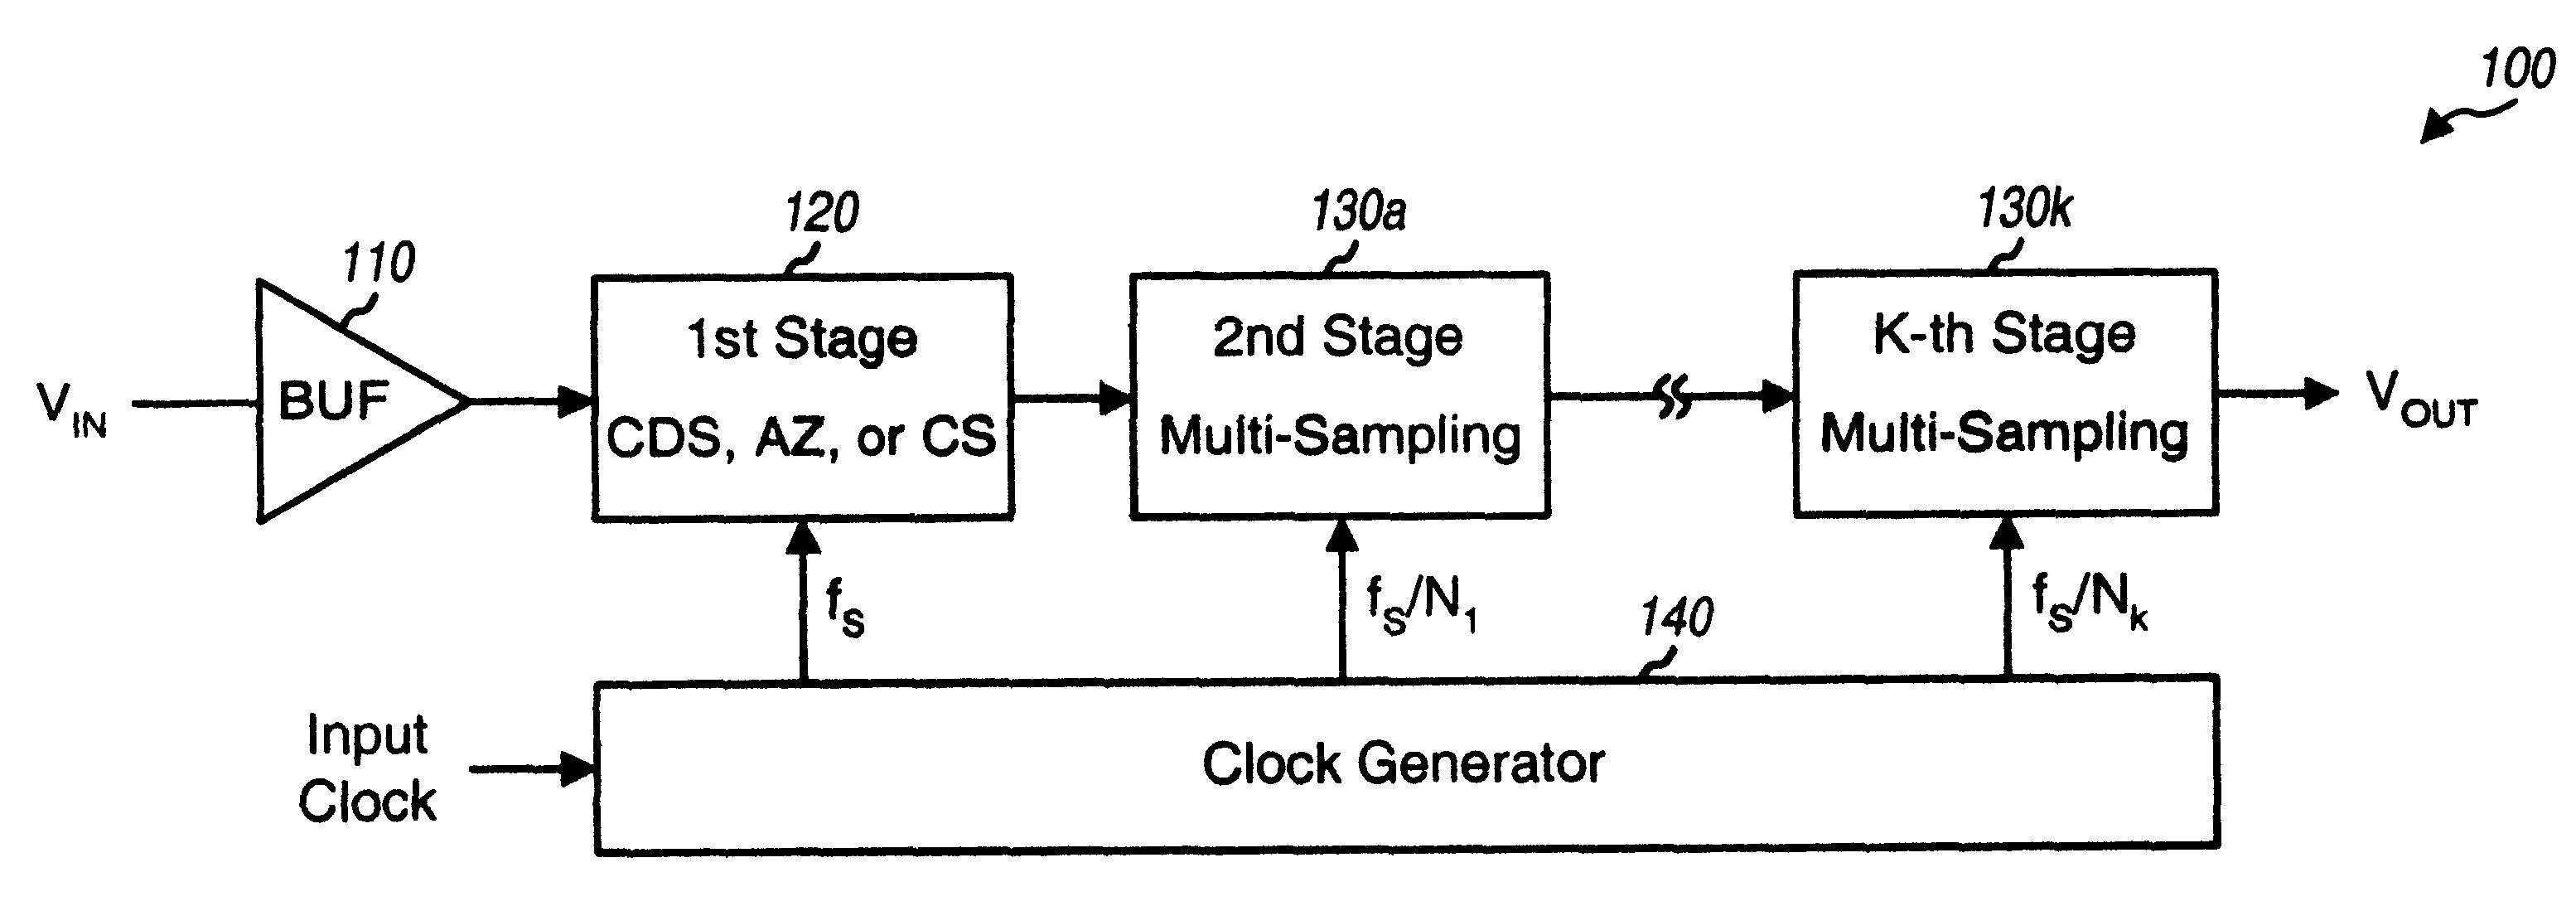 Hybrid multi-stage circuit